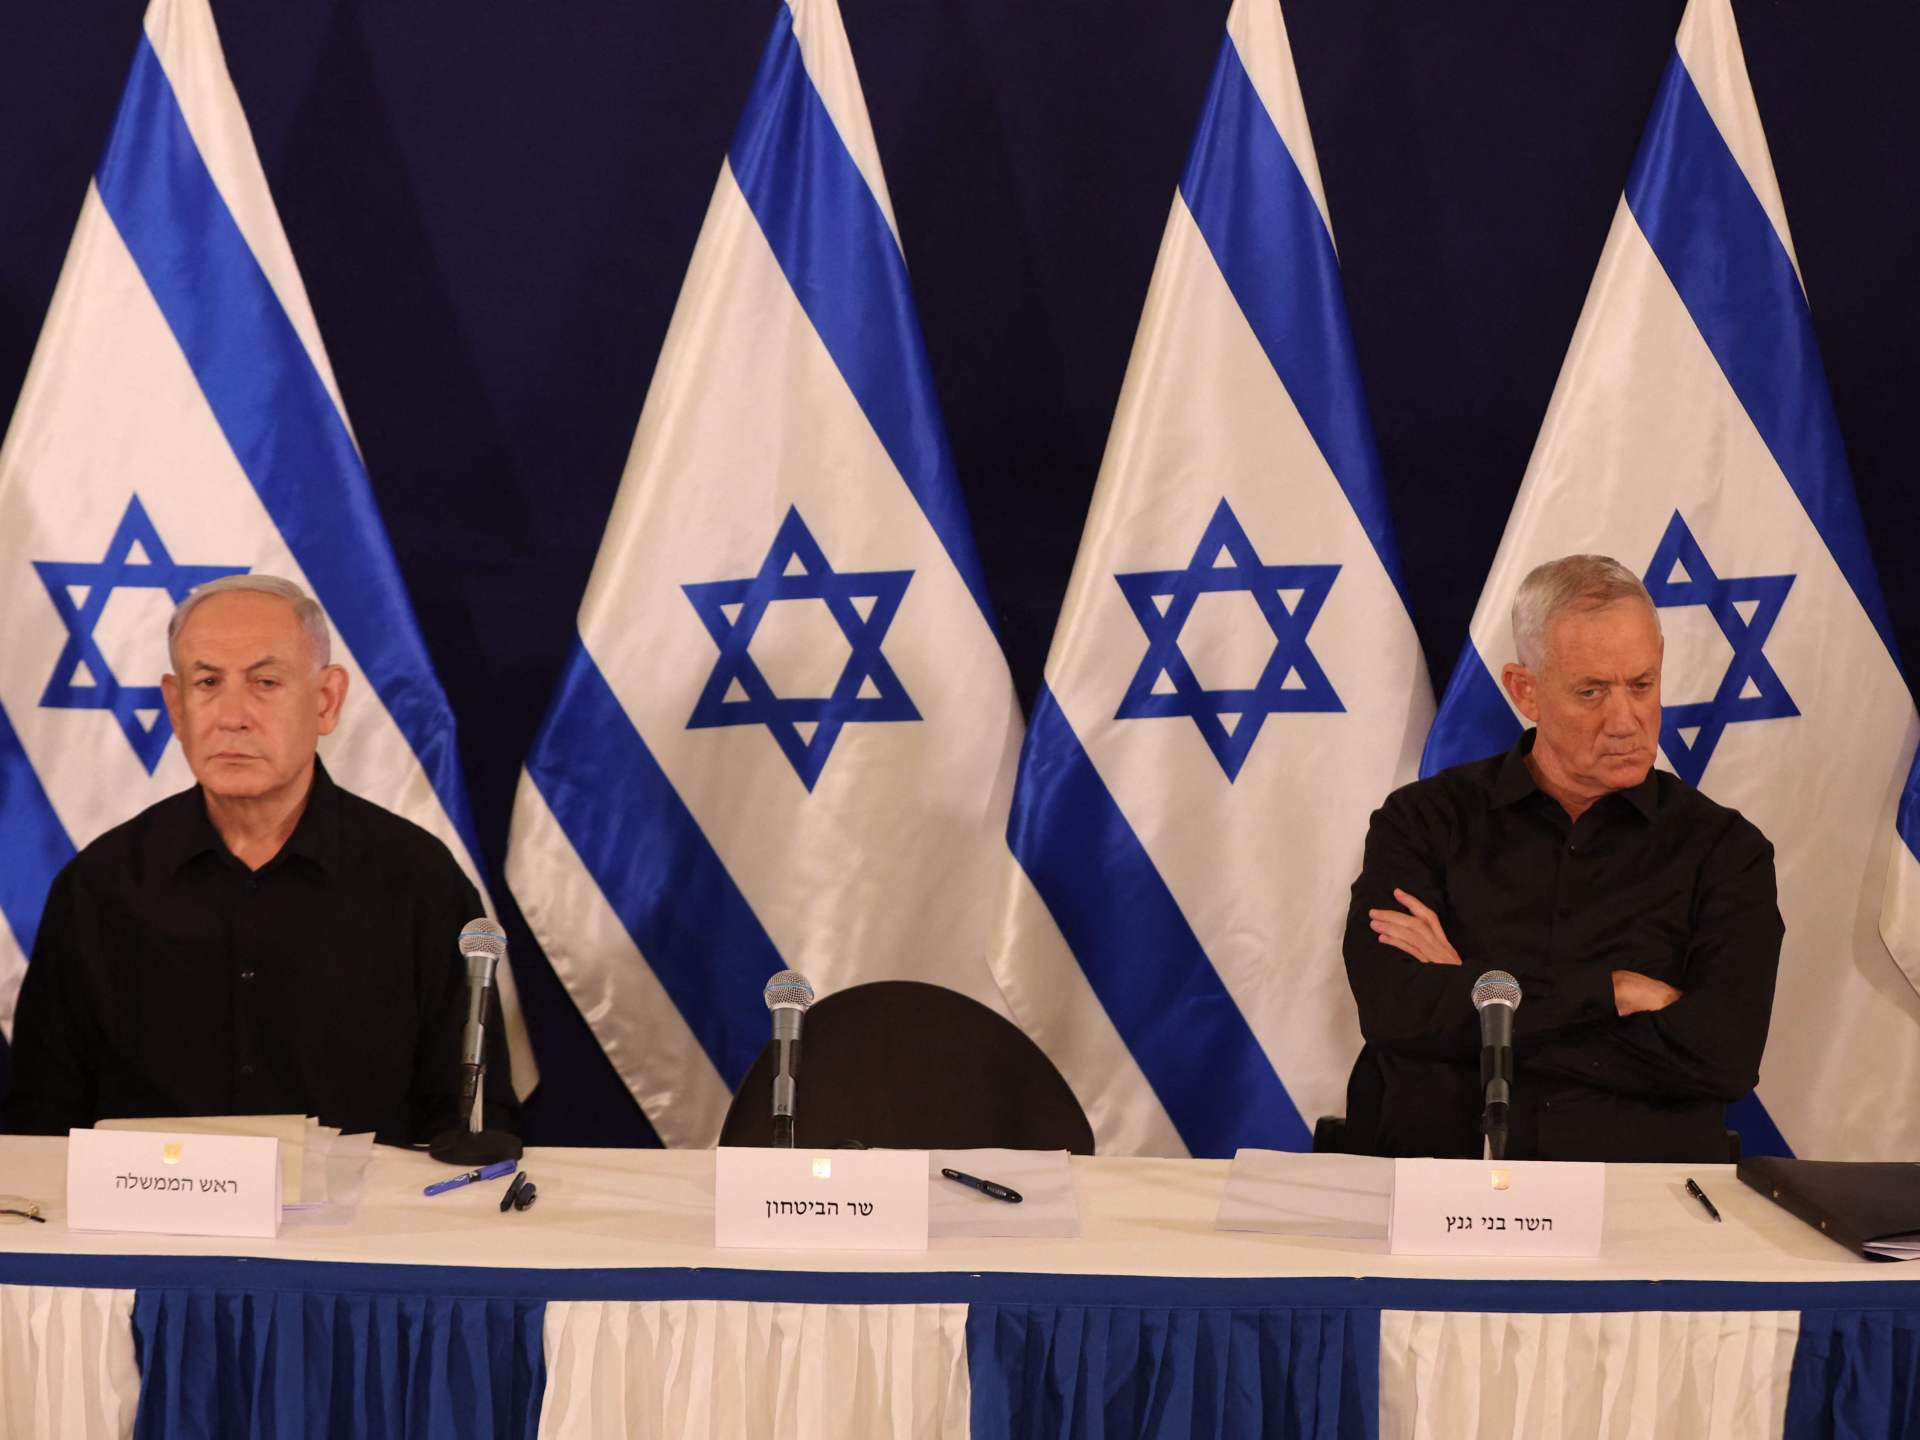 توقعات إسرائيلية بانسحاب حزب غانتس من حكومة نتنياهو | أخبار